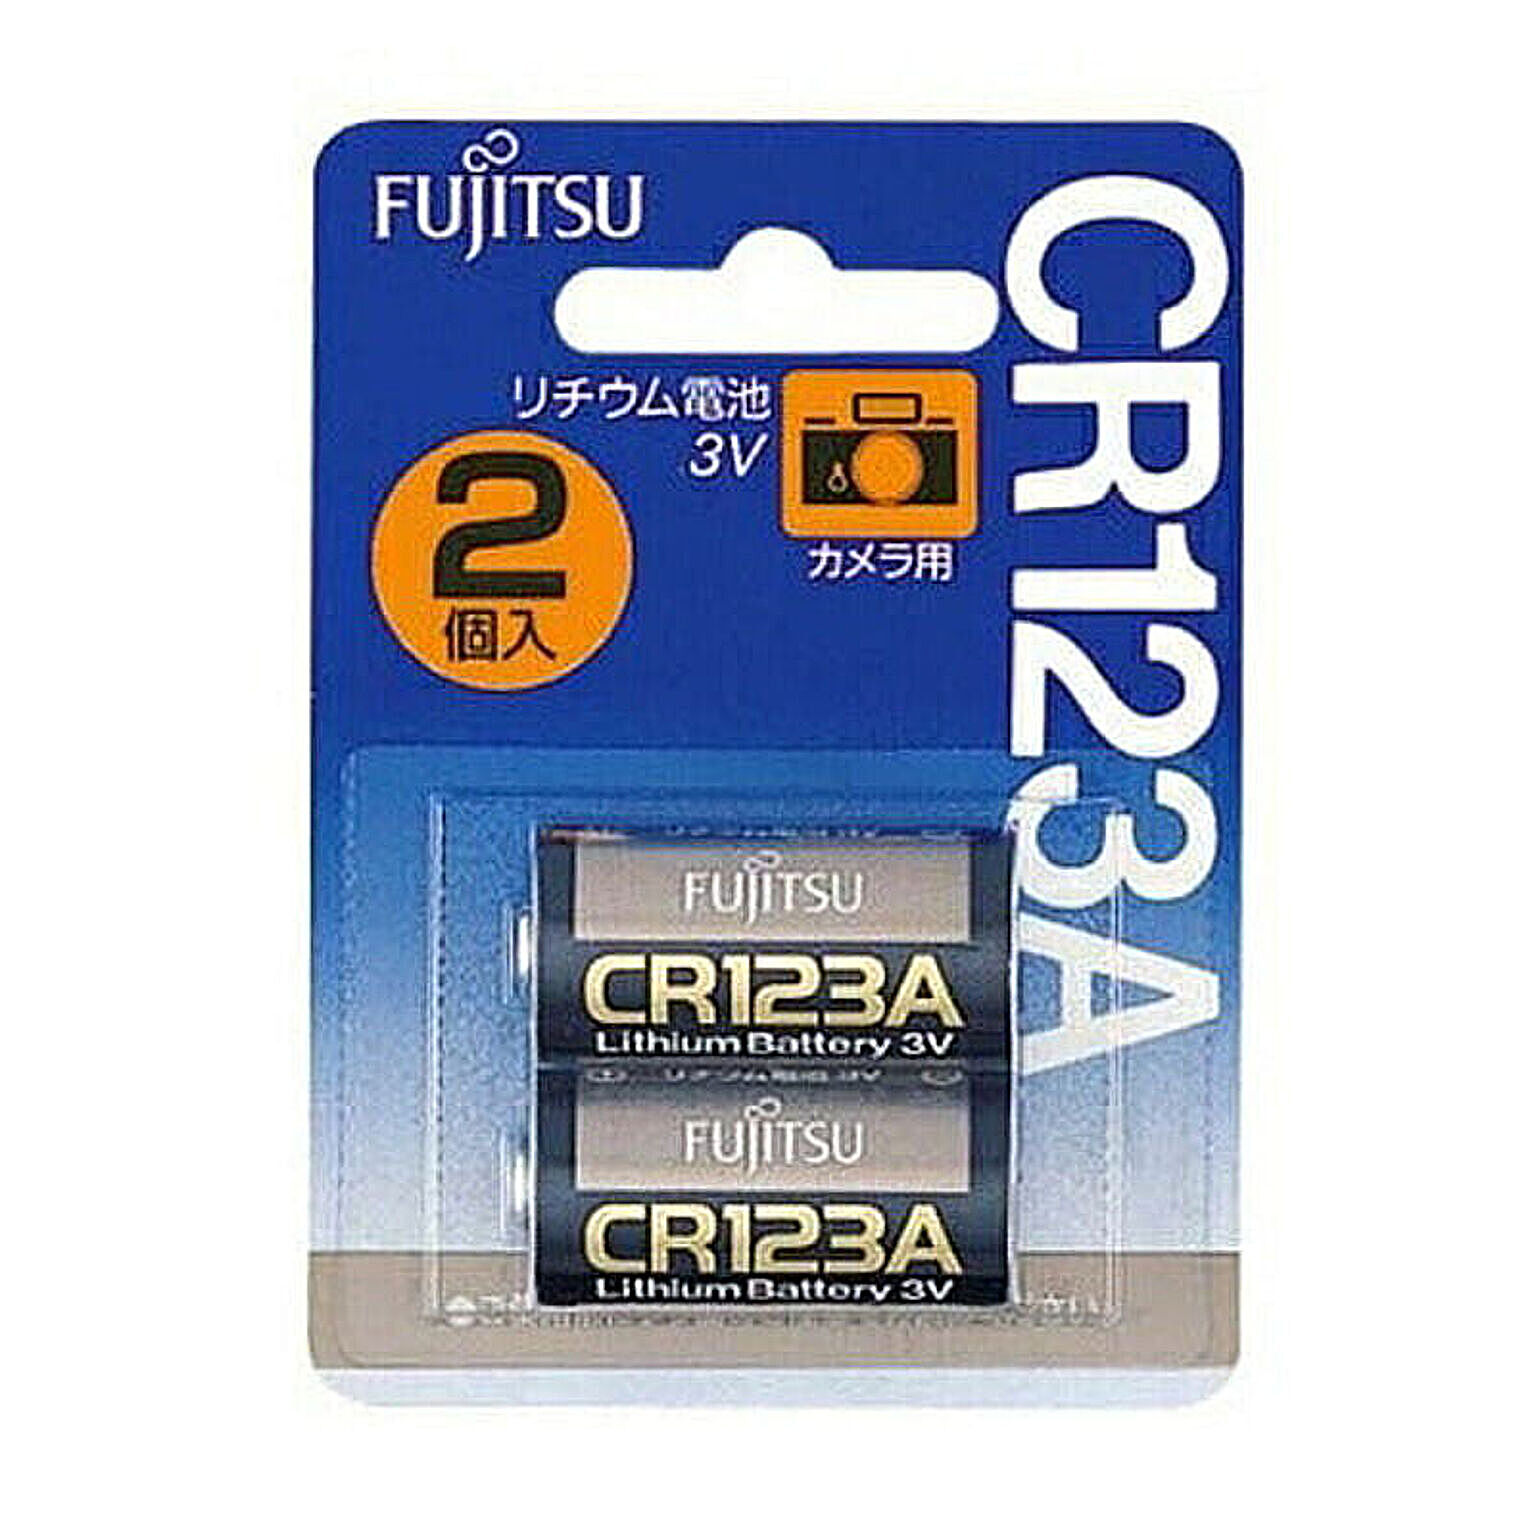 富士通 FUJITSU カメラ用リチウム電池 3V 2個パック CR123AC(2B)N FDK 管理No. 4976680350406